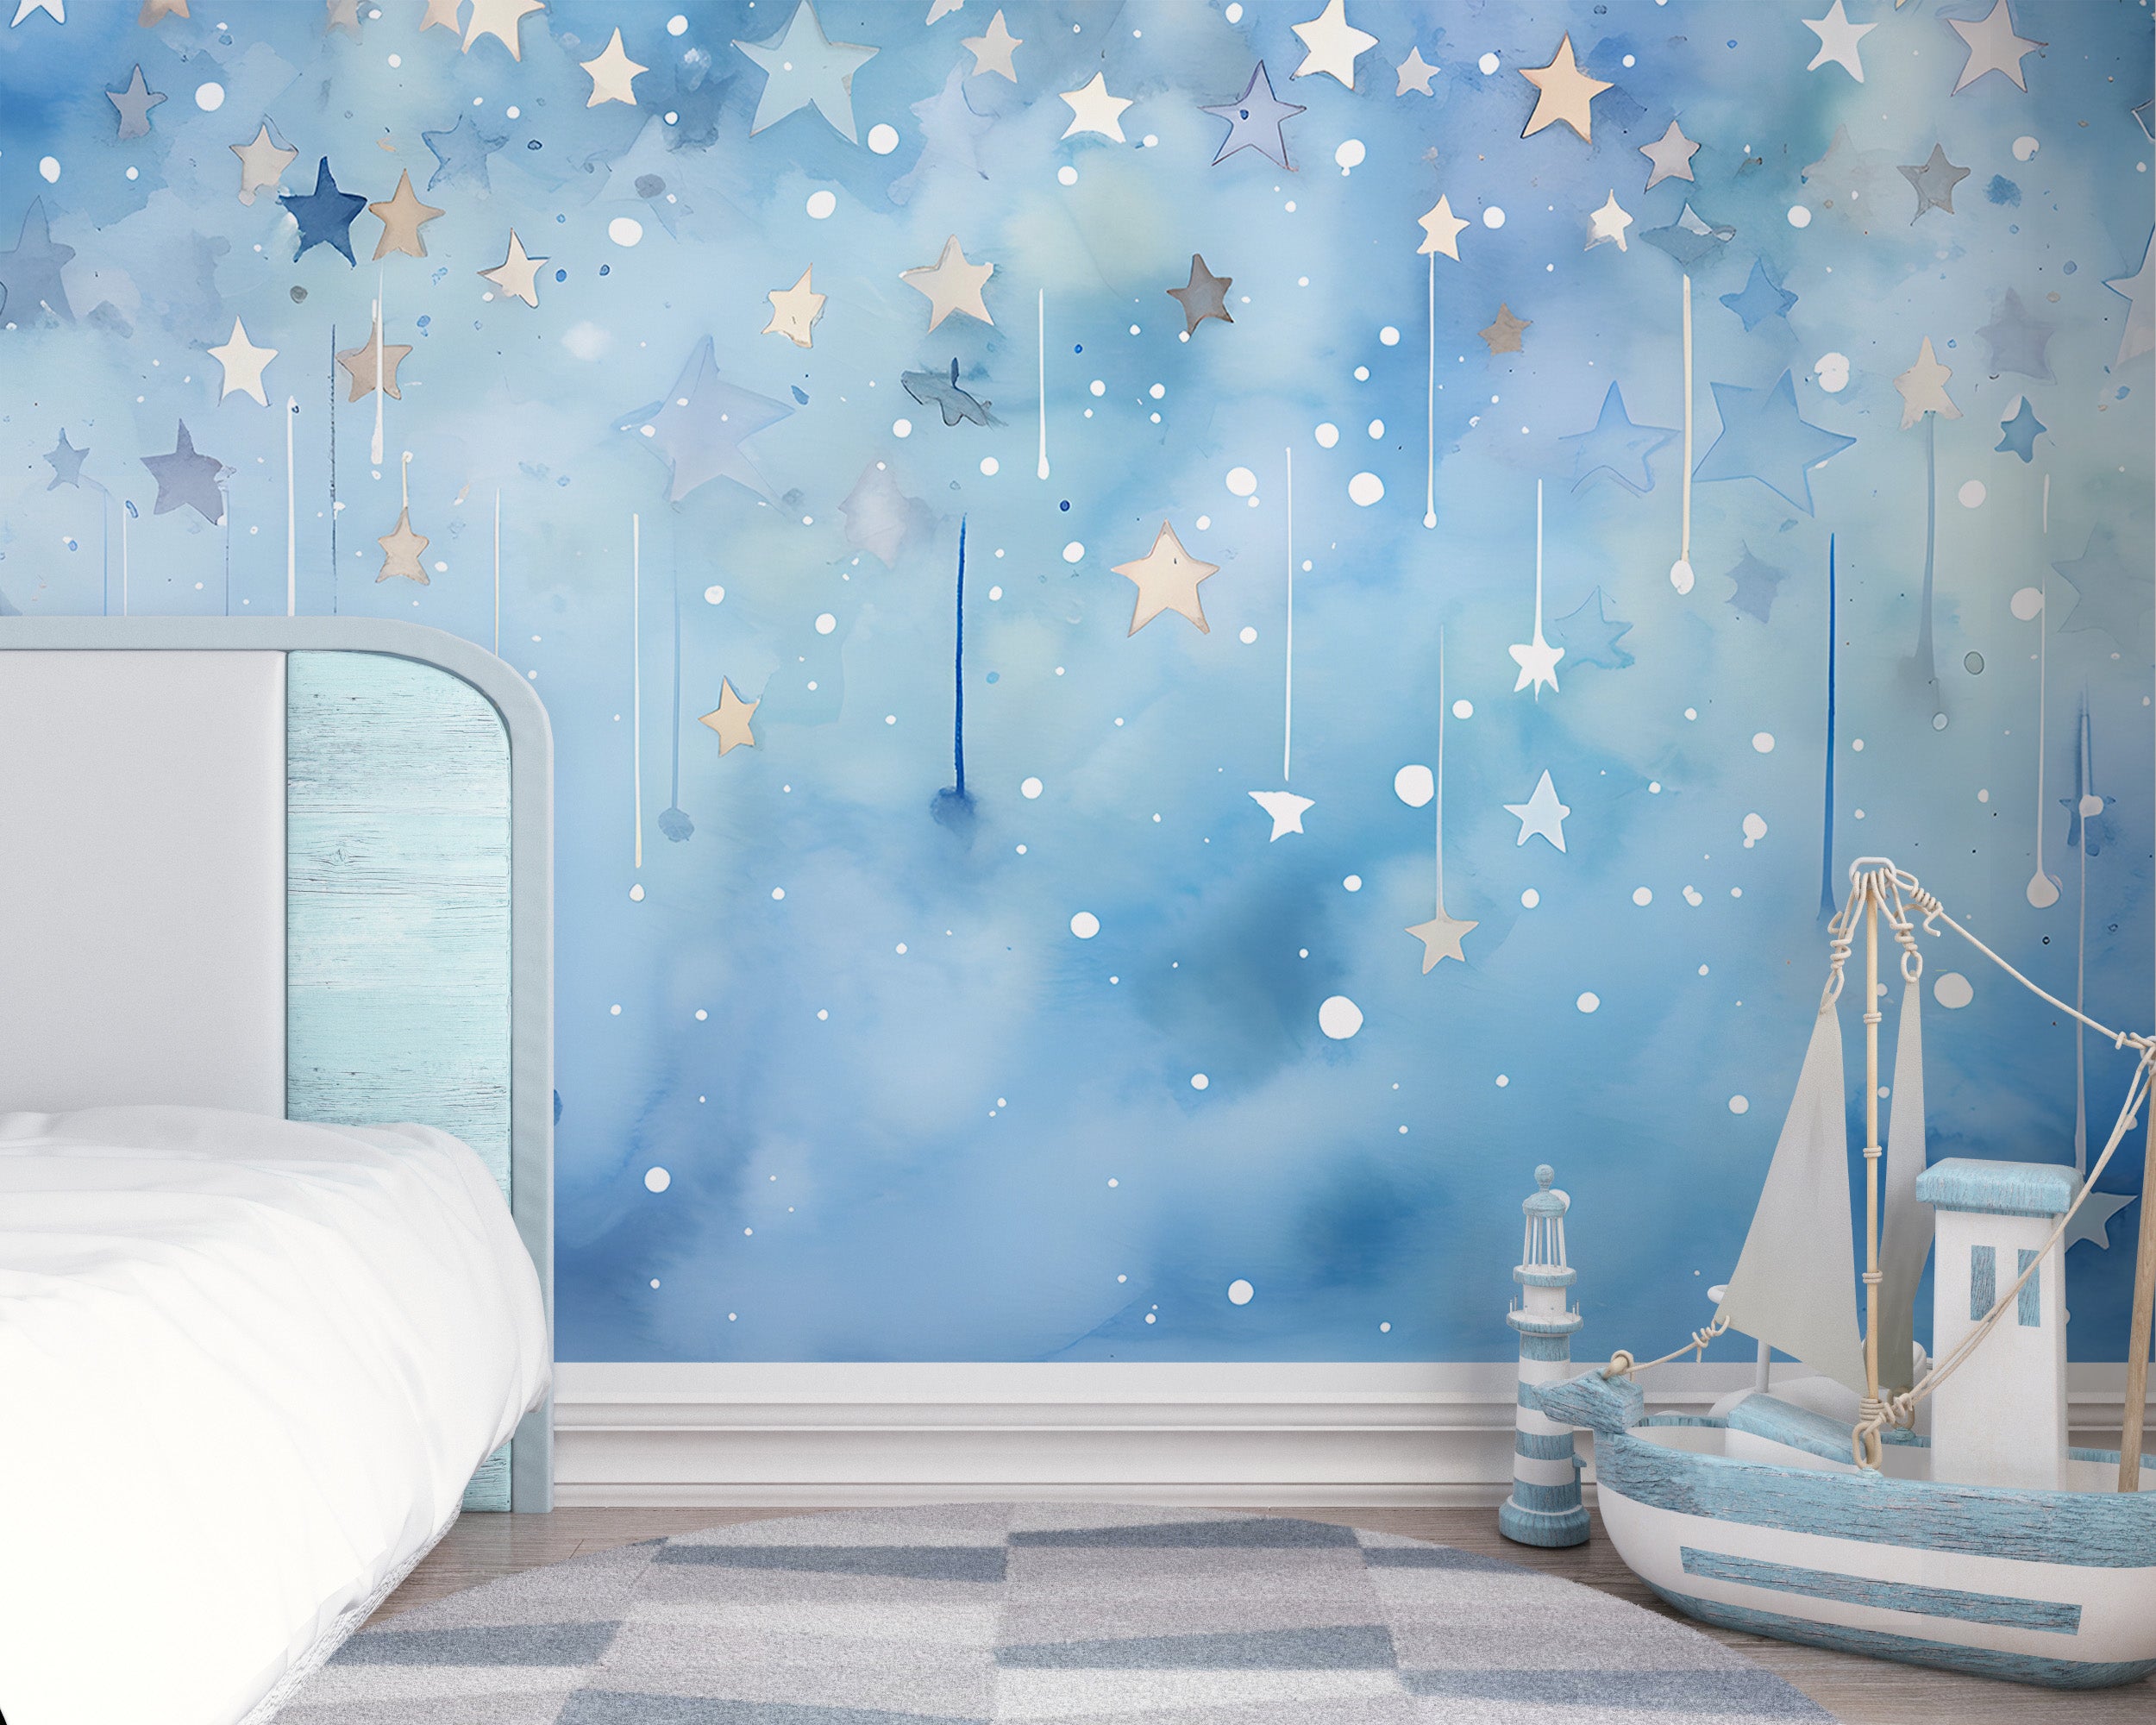 Nursery Celestial Theme Wall Art